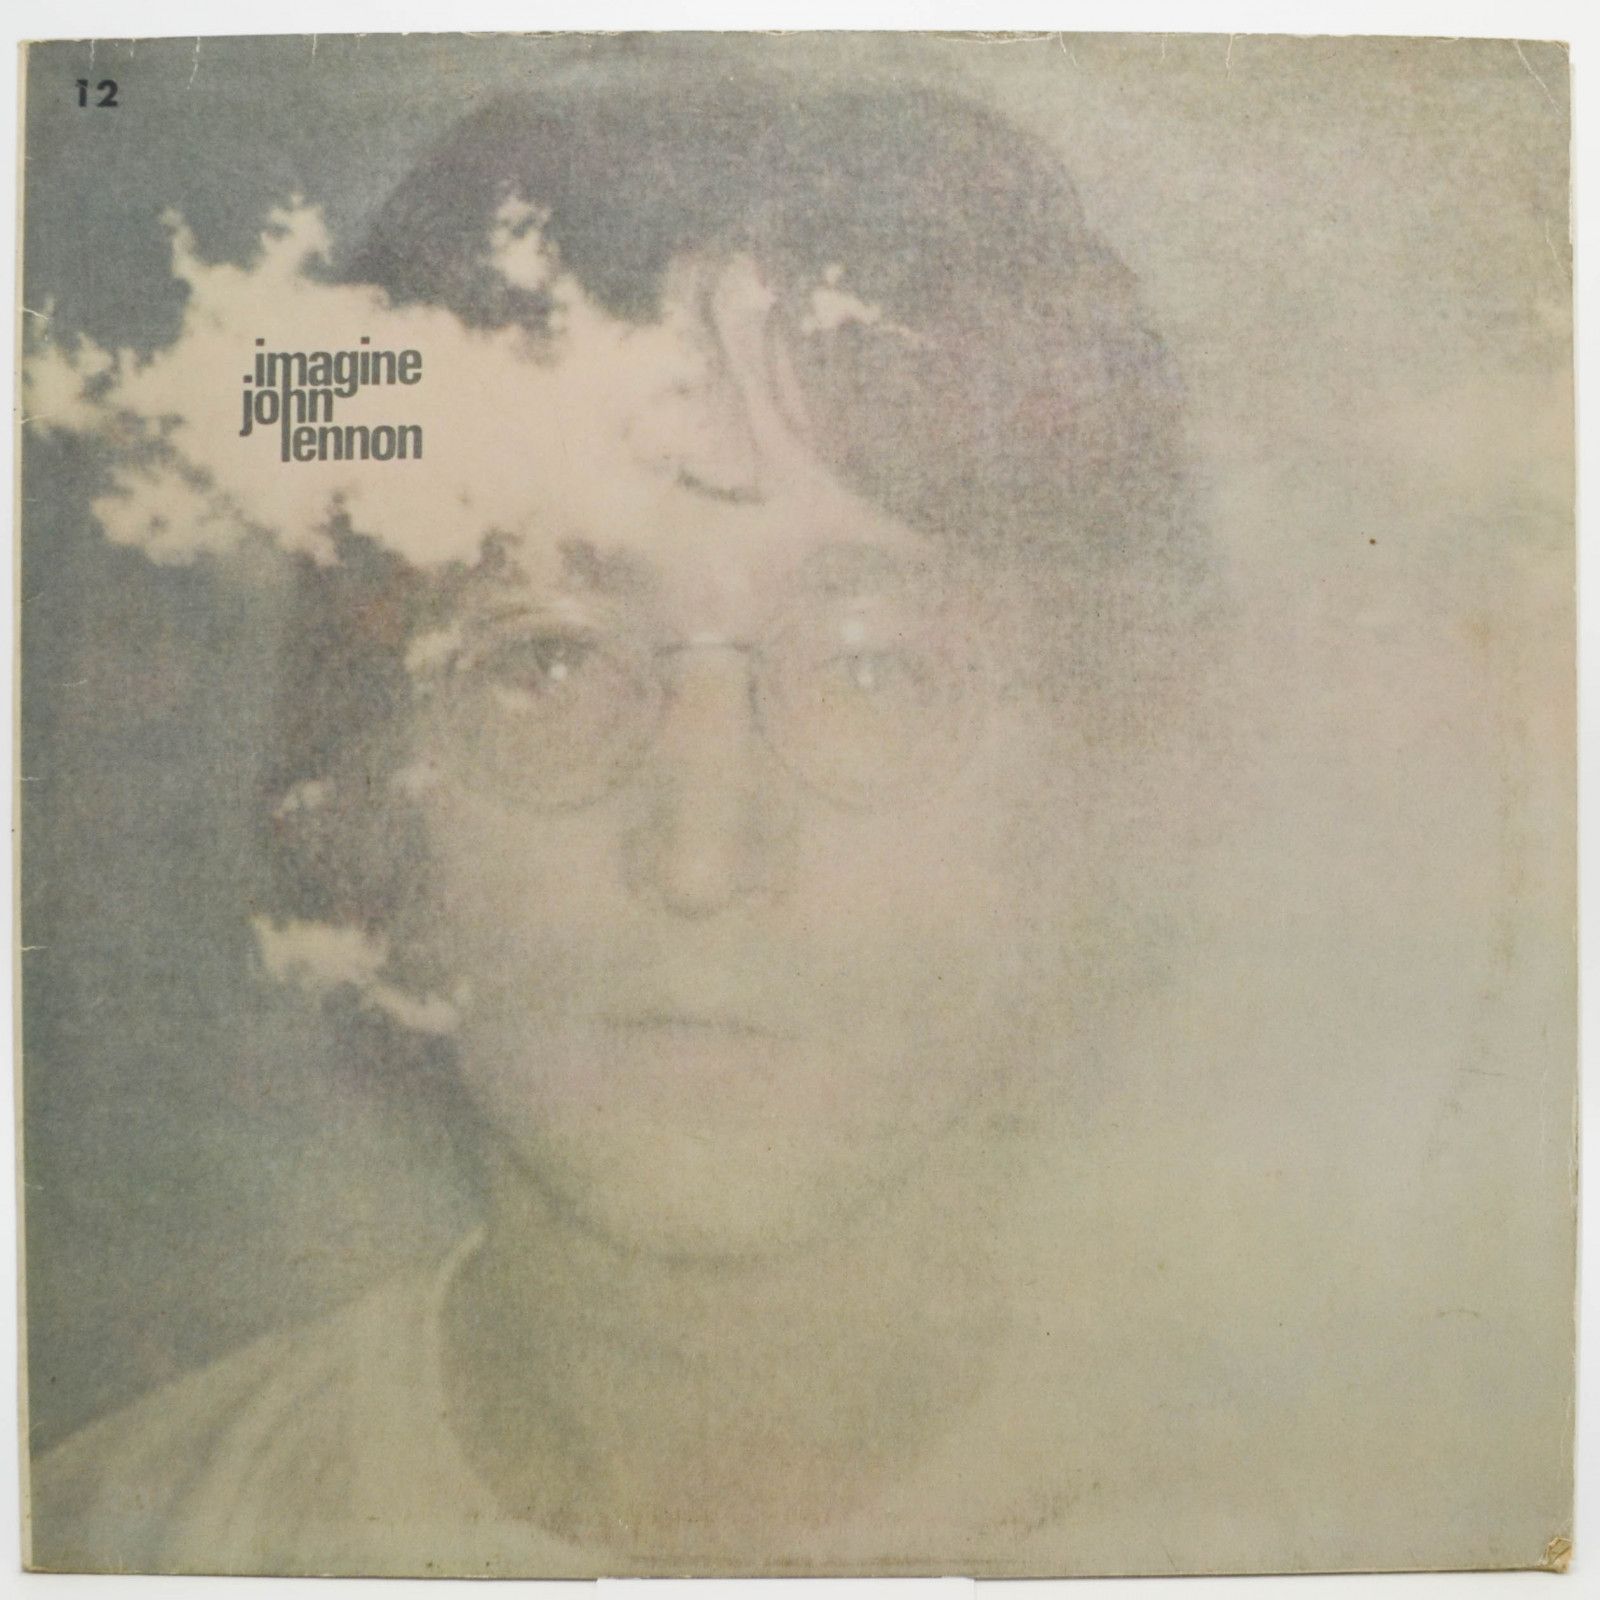 John Lennon — Imagine, 1971